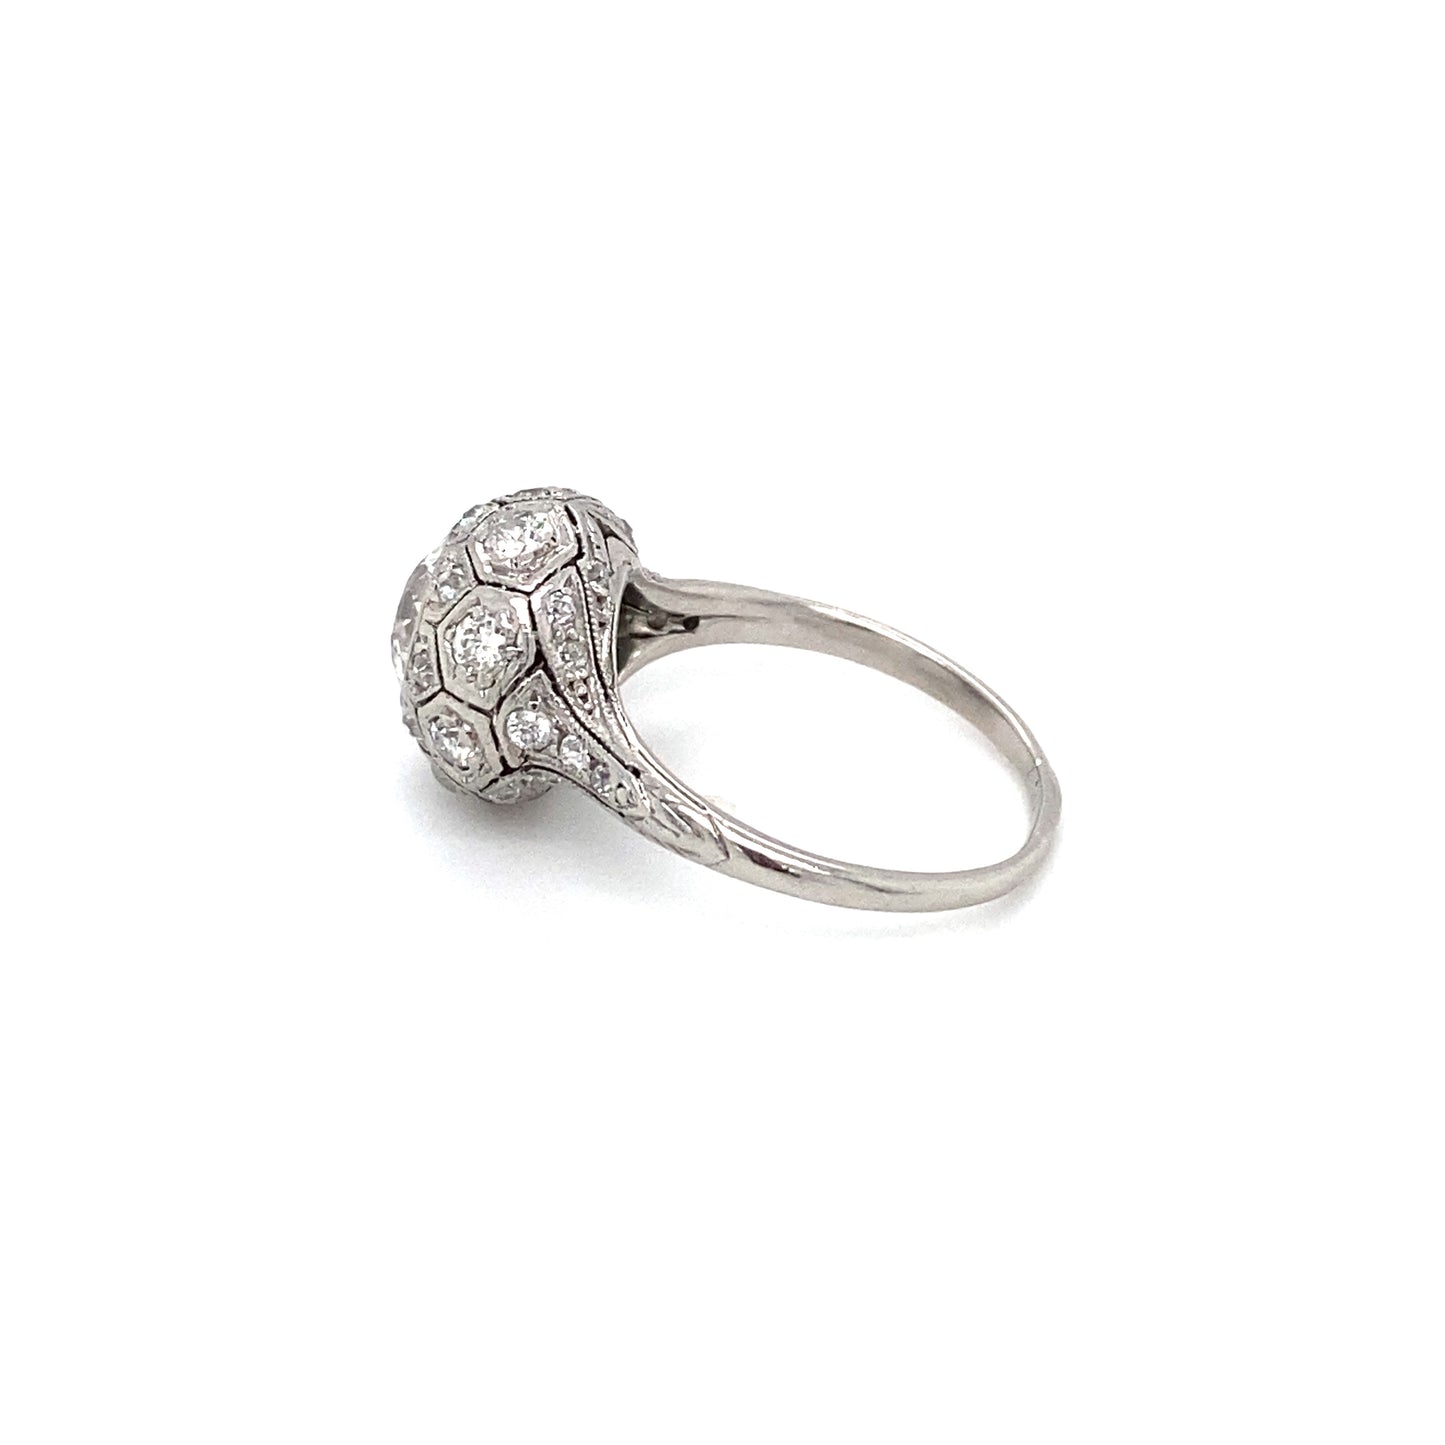 Circa 1920s Art Deco 1.20 Carat European Cut Diamond Engagement Ring in Platinum